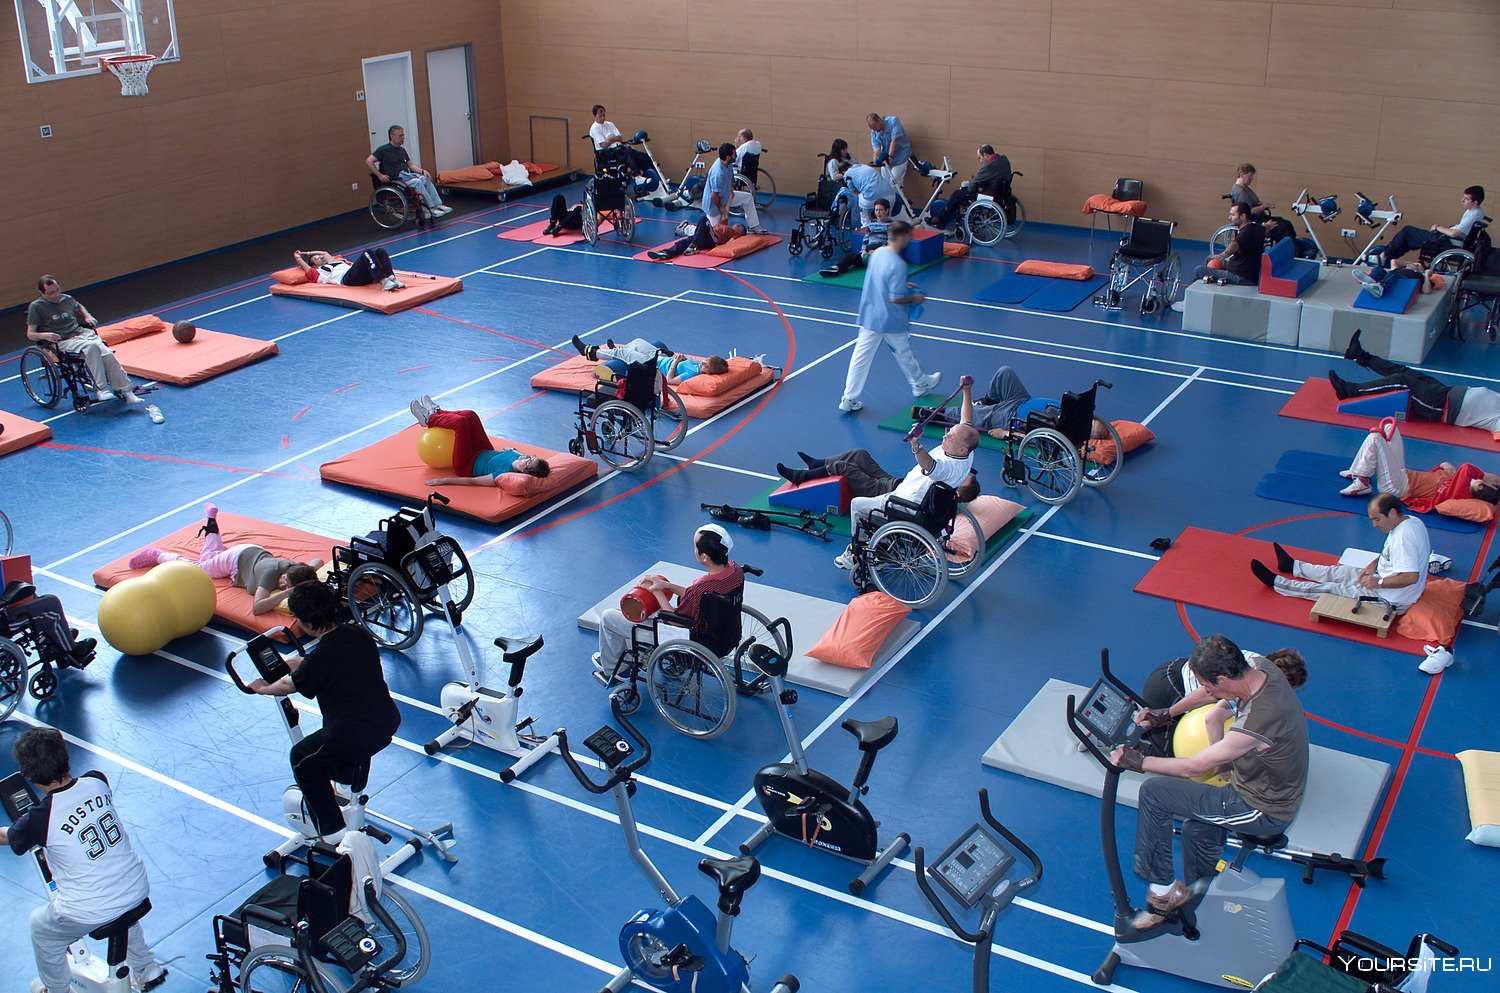 Материальная спортивная база. Спортзал для инвалидов. Спорт для инвалидов. Спортивный зал для инвалидов. Адаптивный спорт.